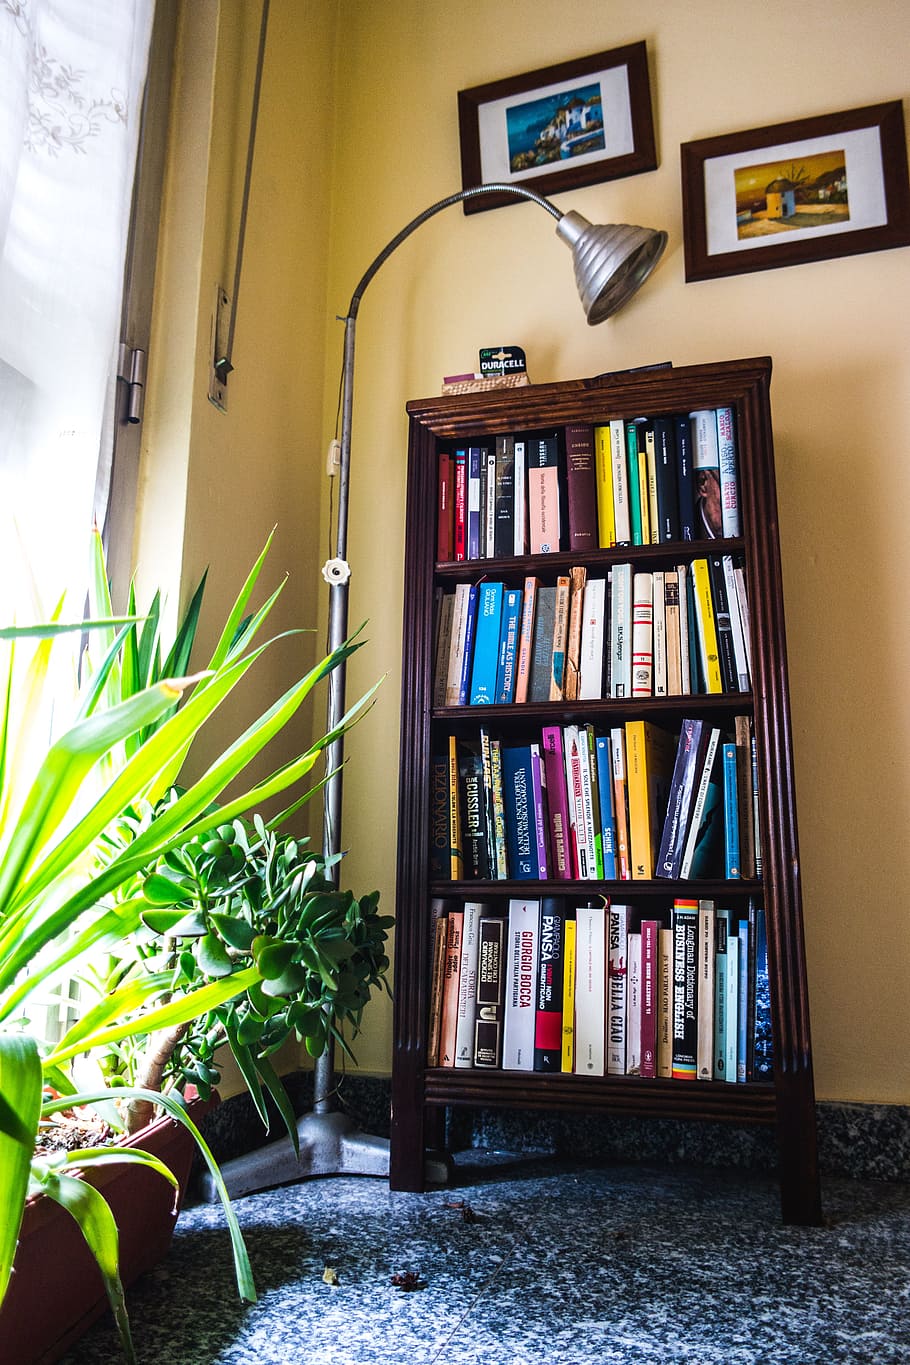 HD wallpaper: books, lamp, plants, room, bookcase, bookshelves